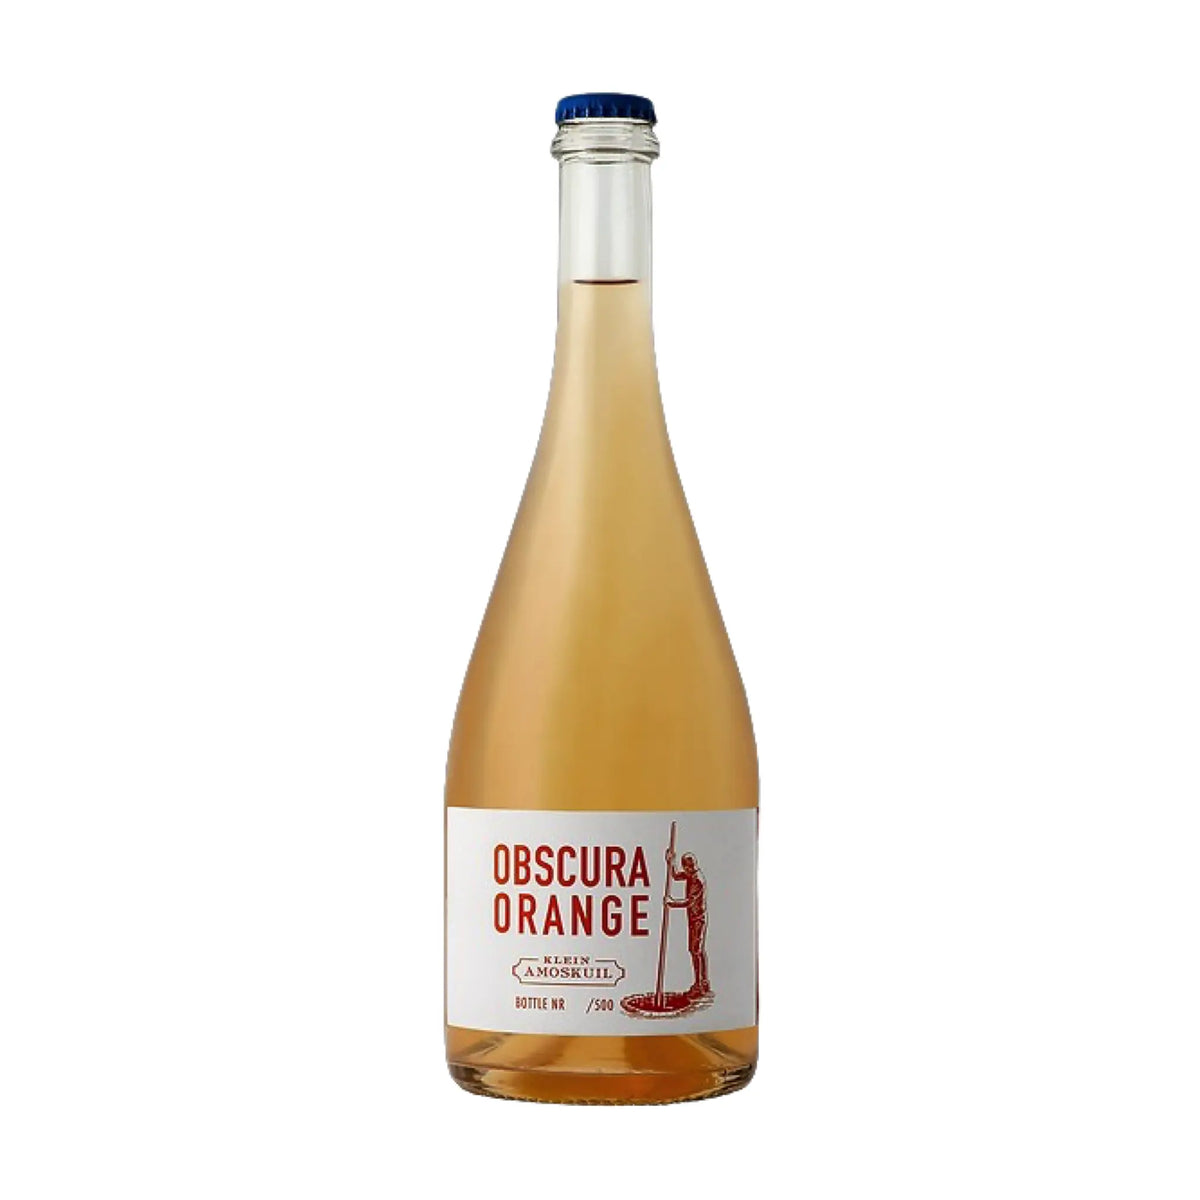 Klein Amoskuil-Orange Wein-Orange Wein-Südafrika-Swartland-2021 Obscura Orange-WINECOM